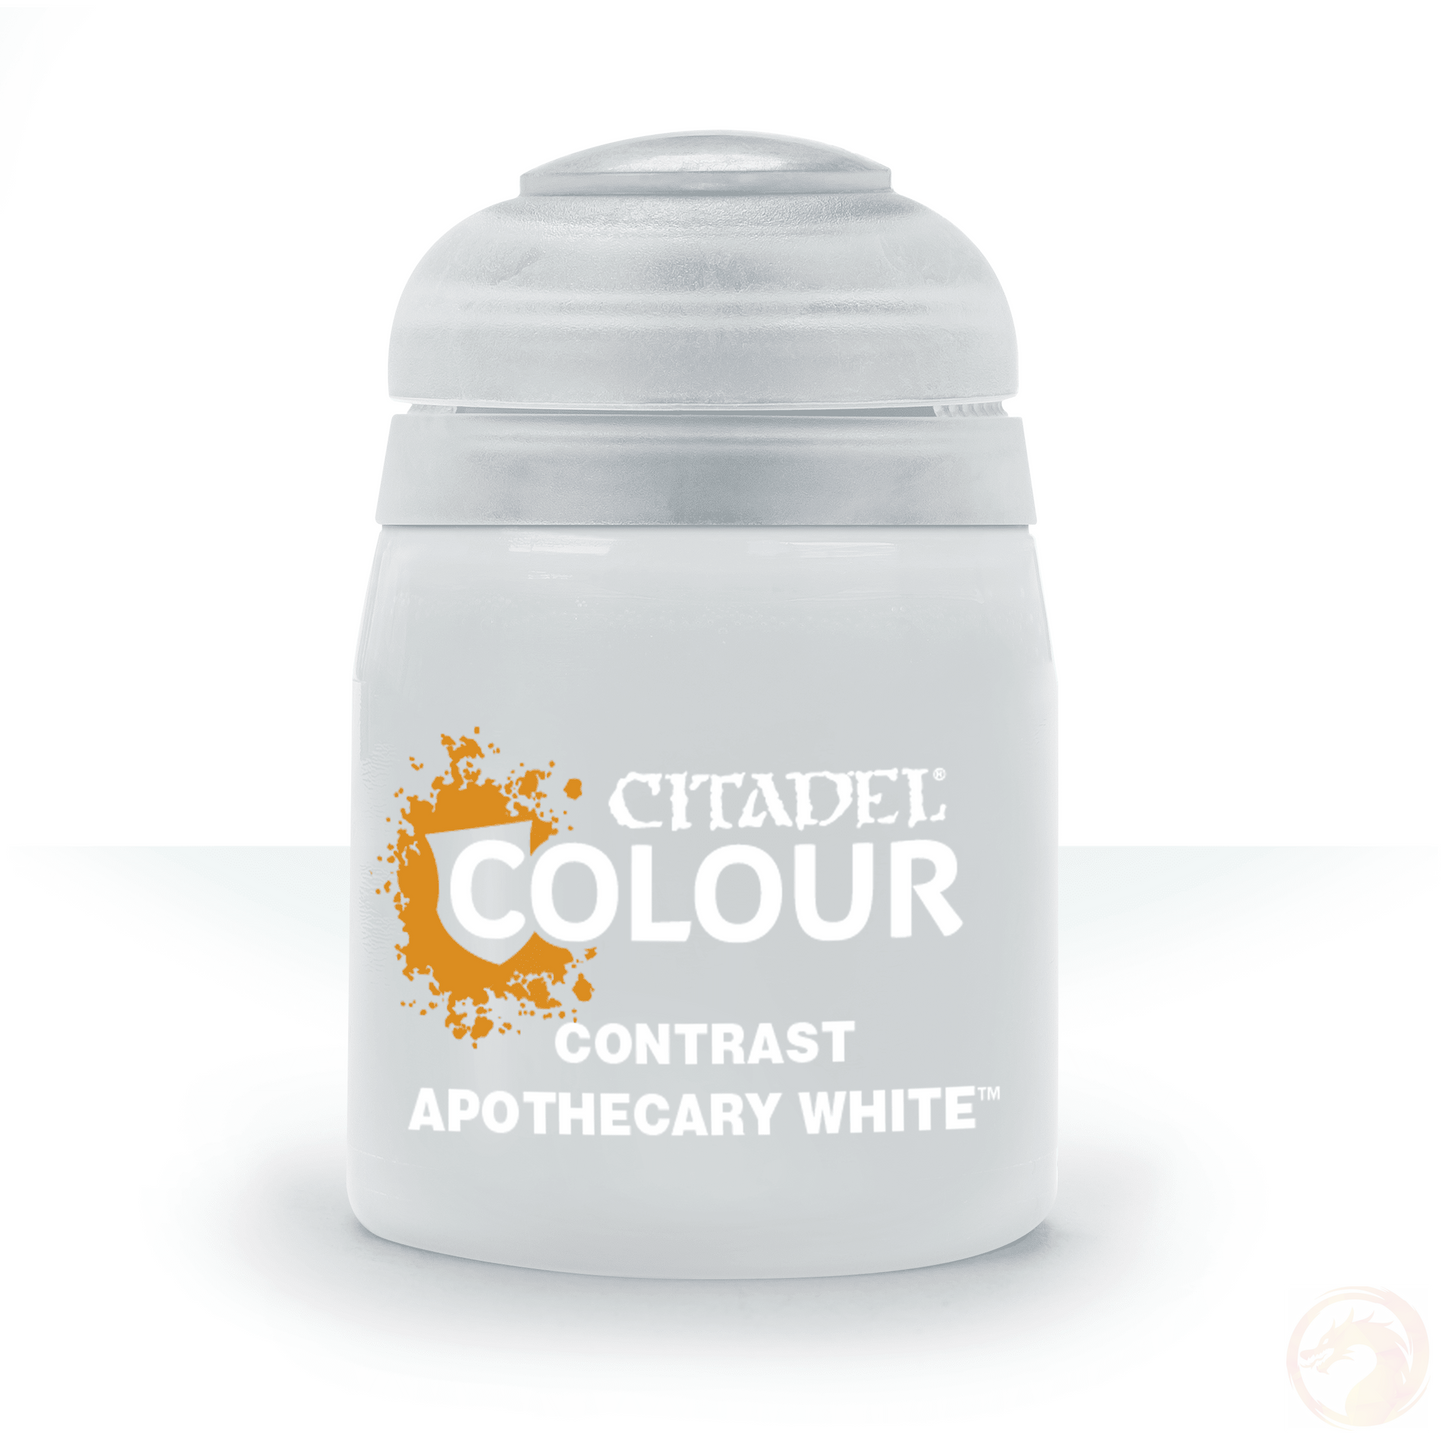 Apothecary White